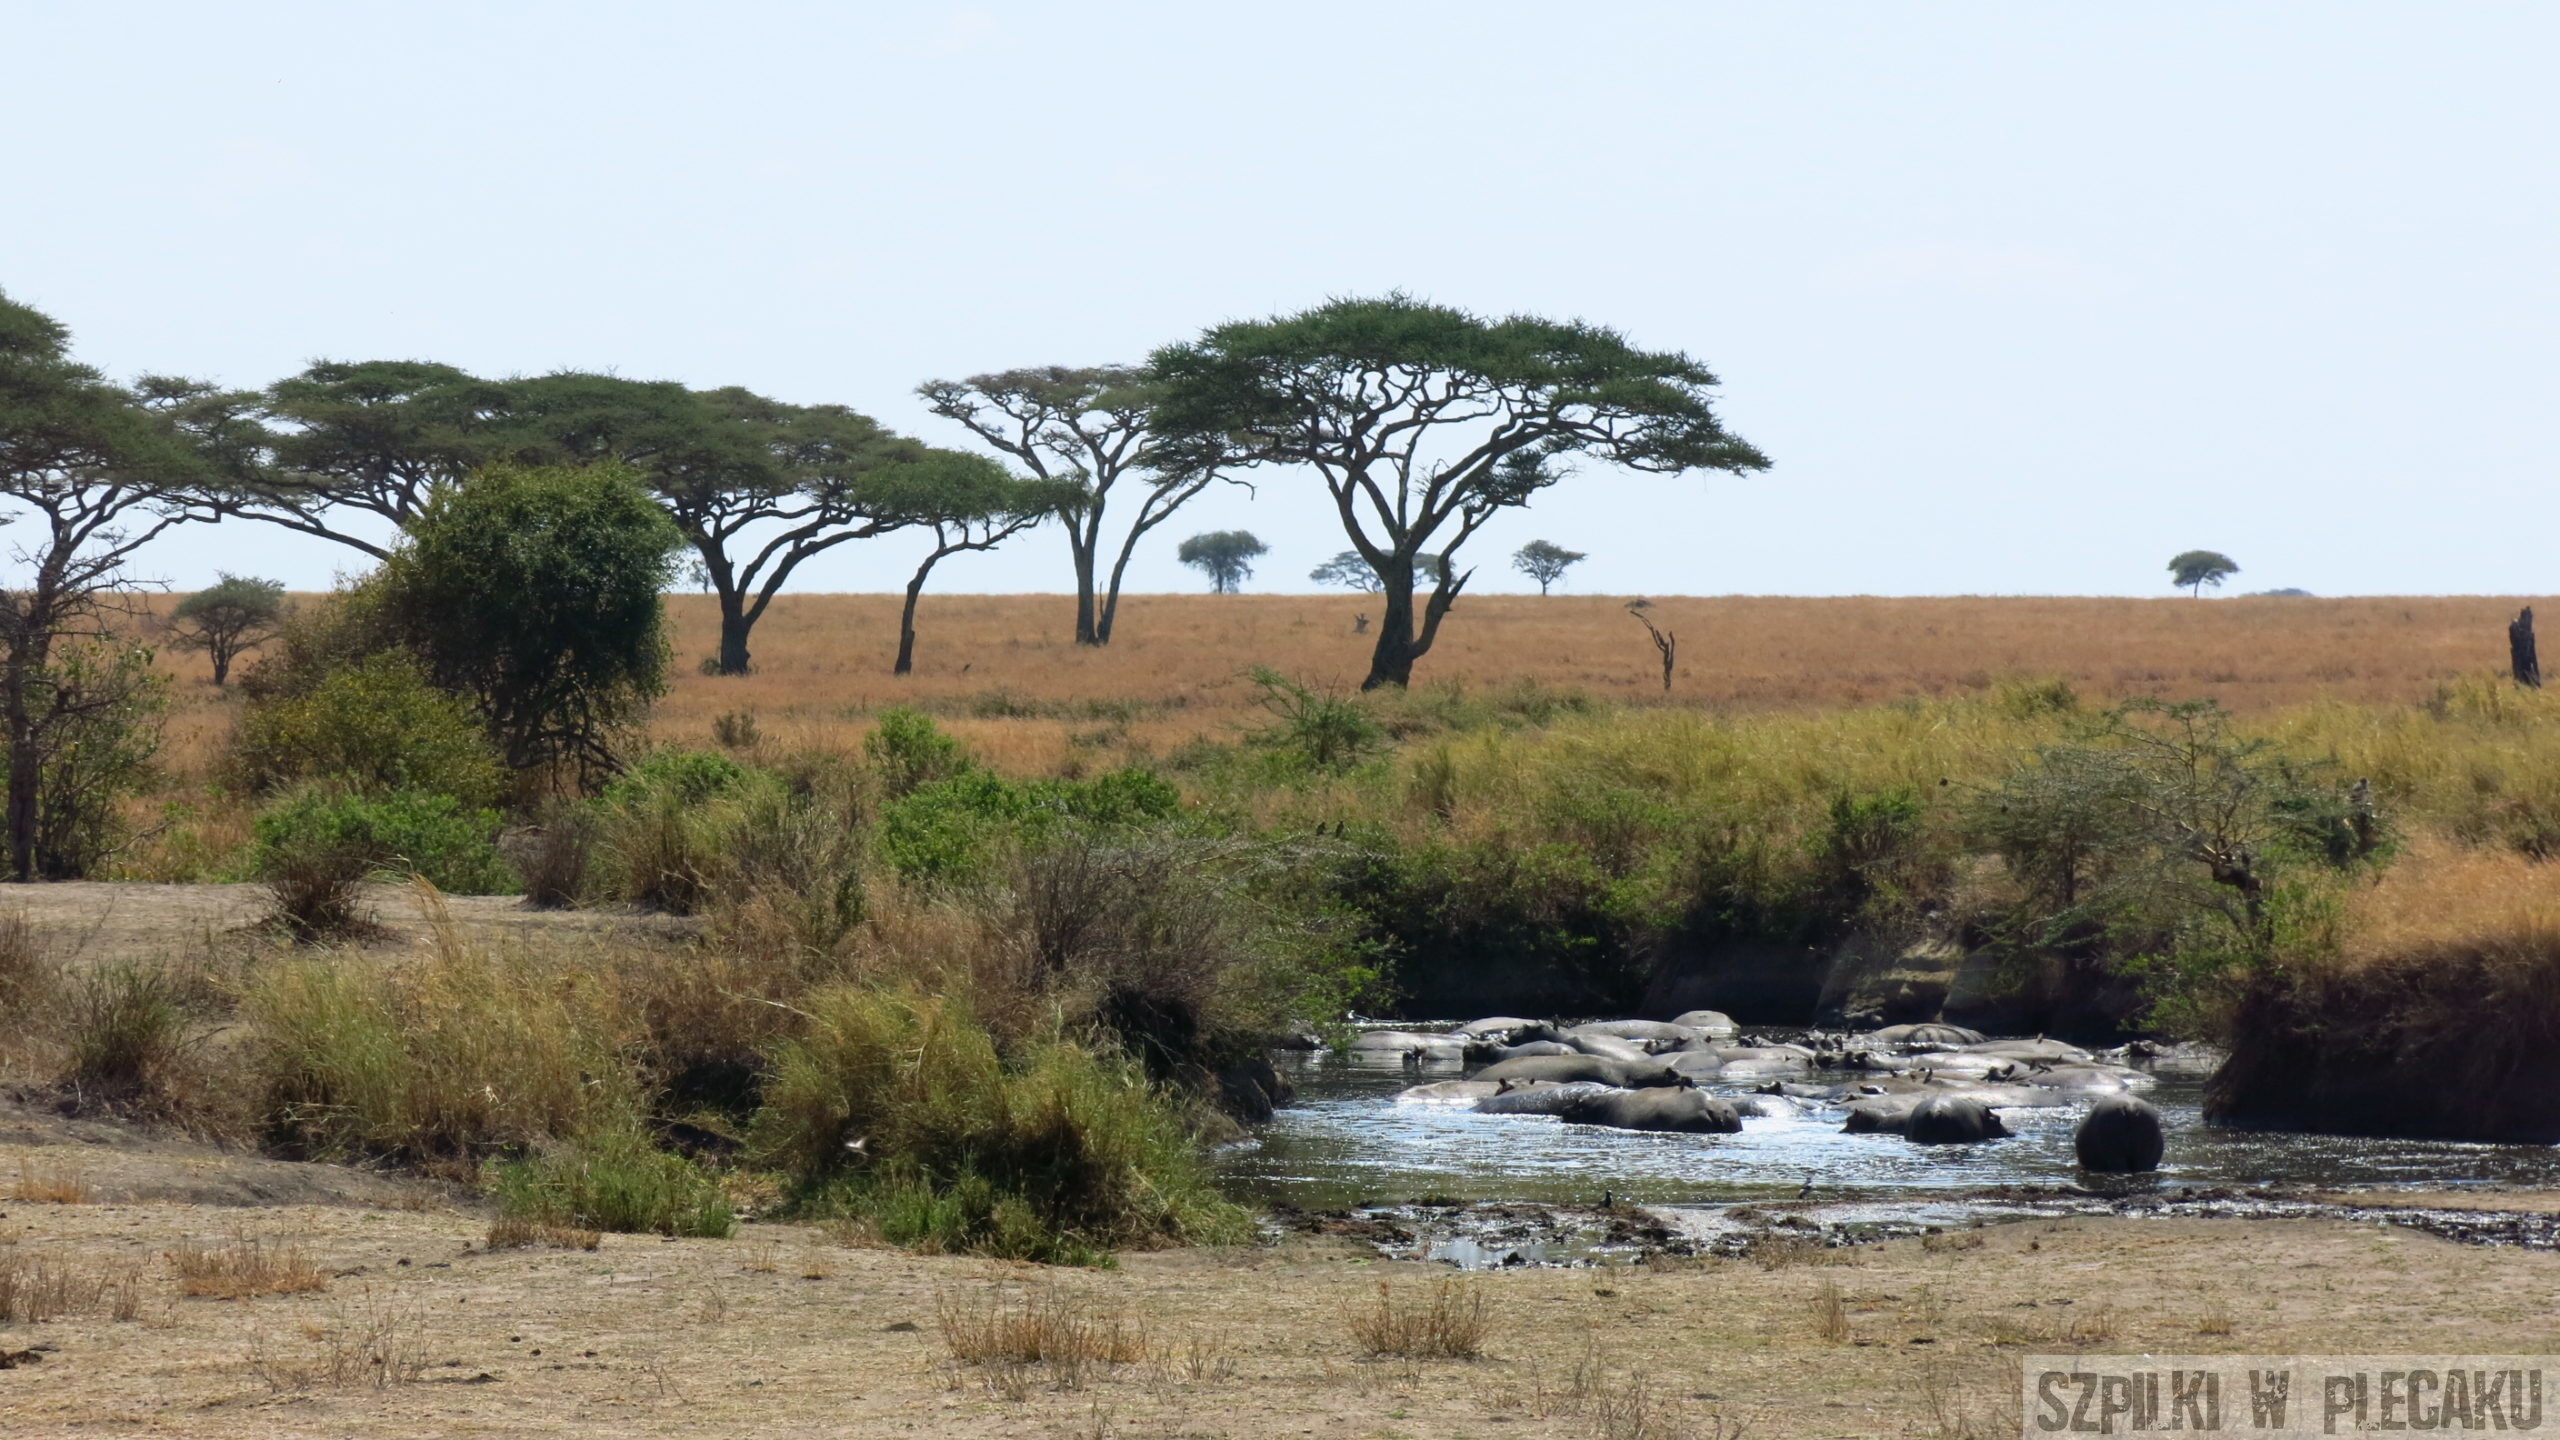 Serengeti - Tanzania - Szpilki w plecaku